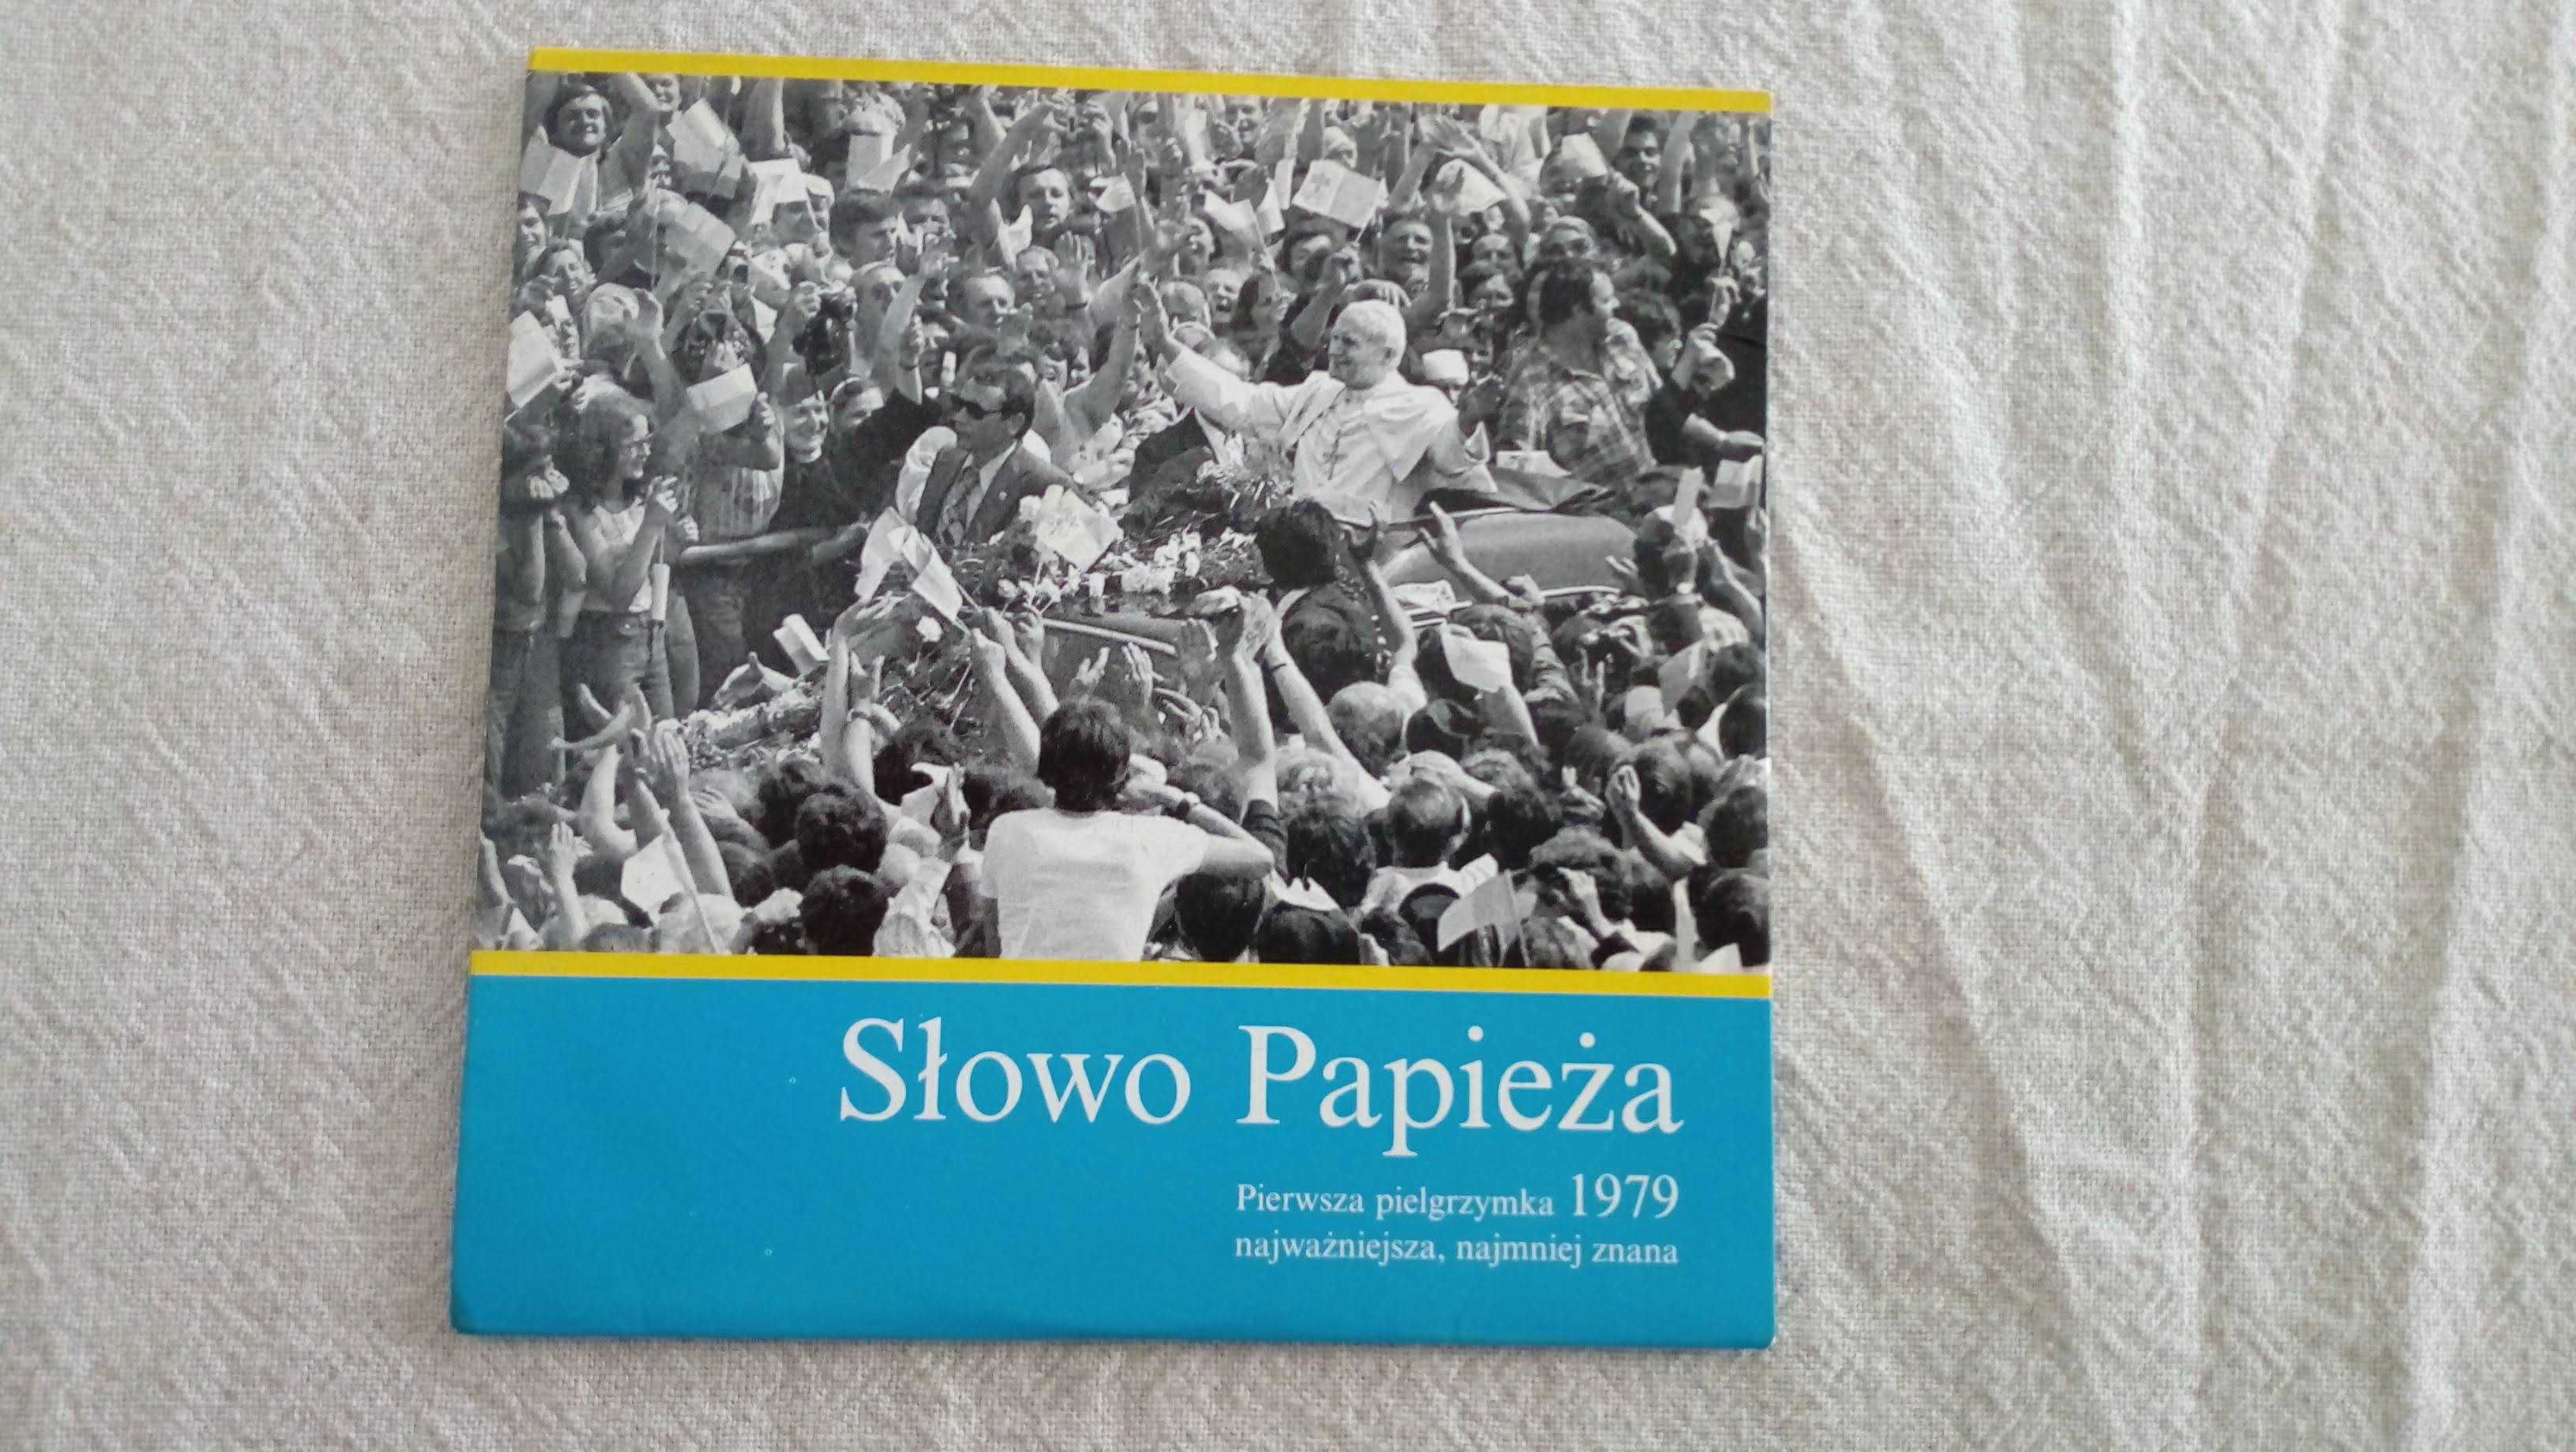 Jan Paweł II, Słowo Papieża, pierwsza pielgrzymka 1979, płyta CD